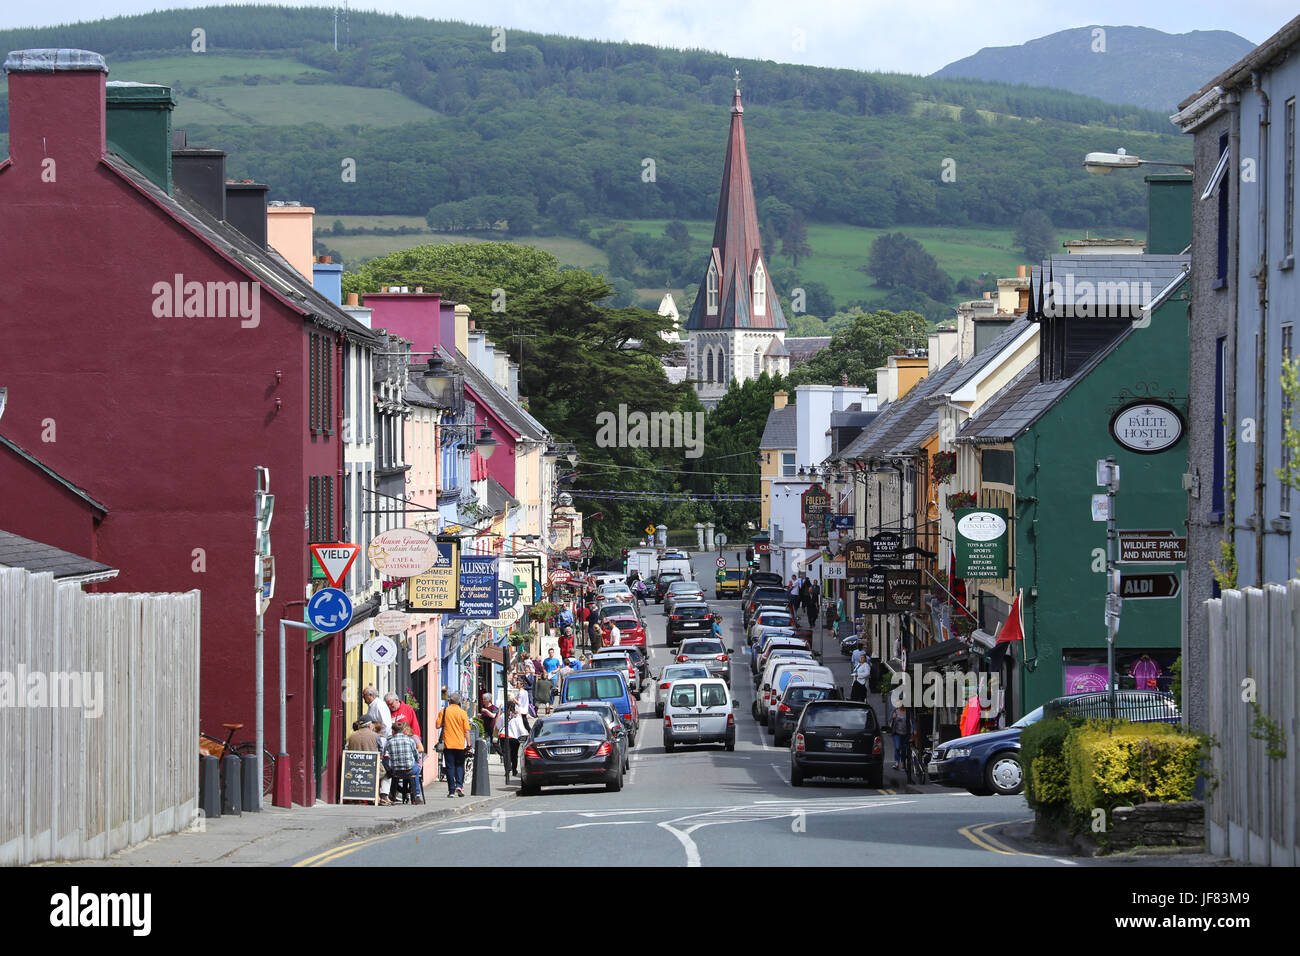 Henry Street dans la ville de Kenmare, comté de Kerry, Irlande. La Sainte Croix de l'église catholique peut être vu dans la distance. Banque D'Images